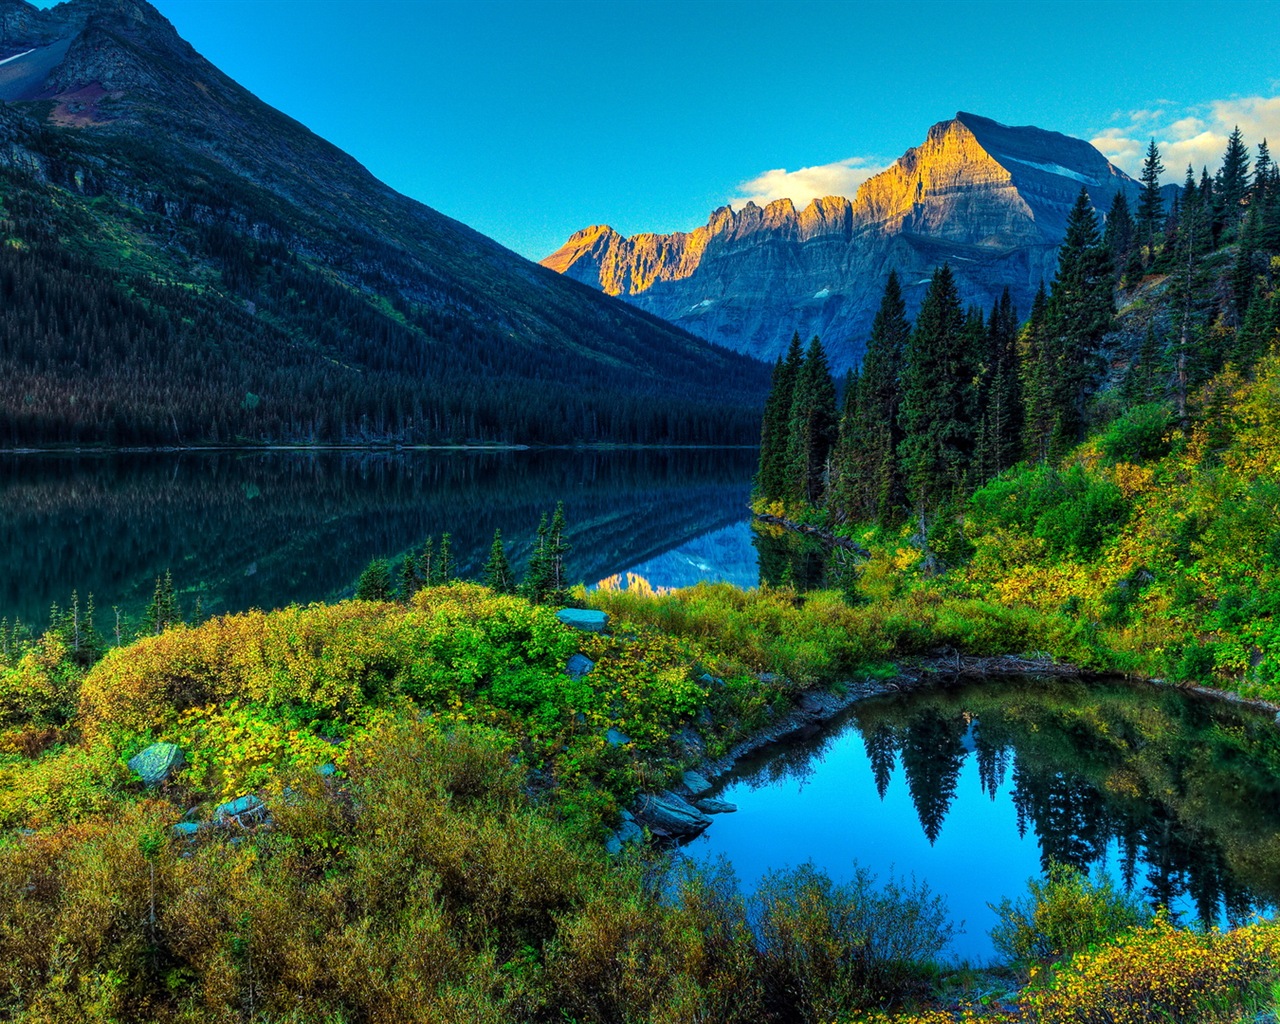 Fondos de pantalla HD paisajes naturales de gran belleza #1 - 1280x1024